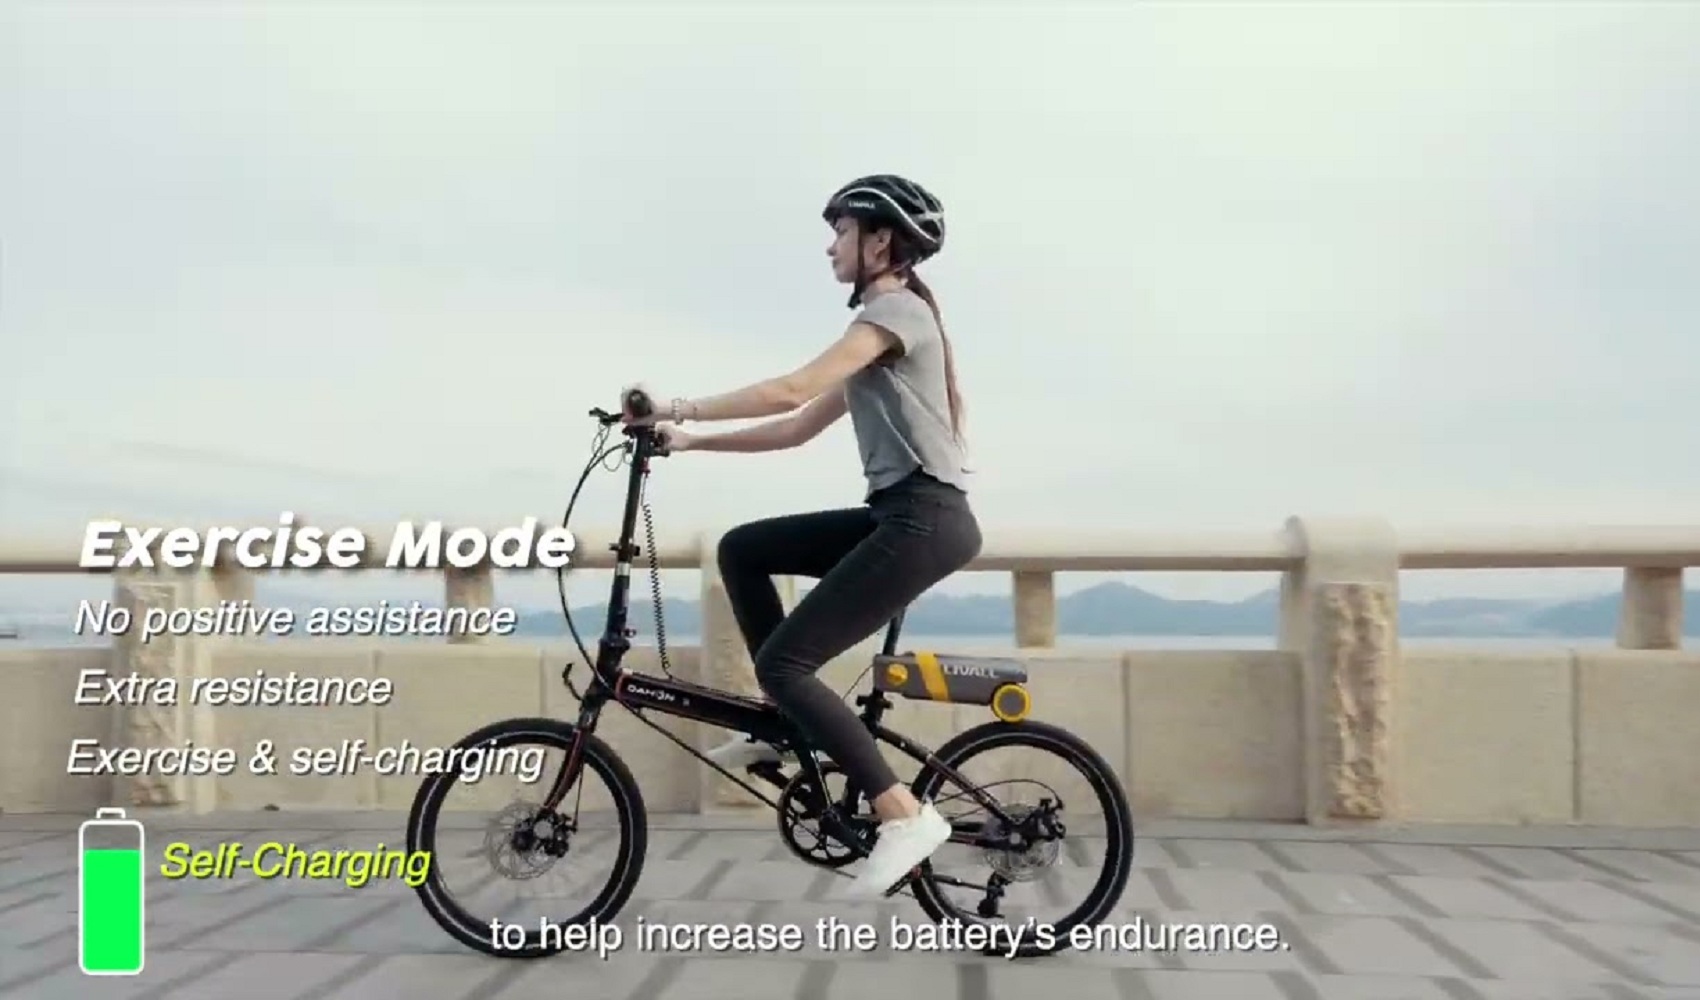 Bộ chuyển đổi Pikaboost “biến” xe đạp thành xe đạp điện trong  30 giây